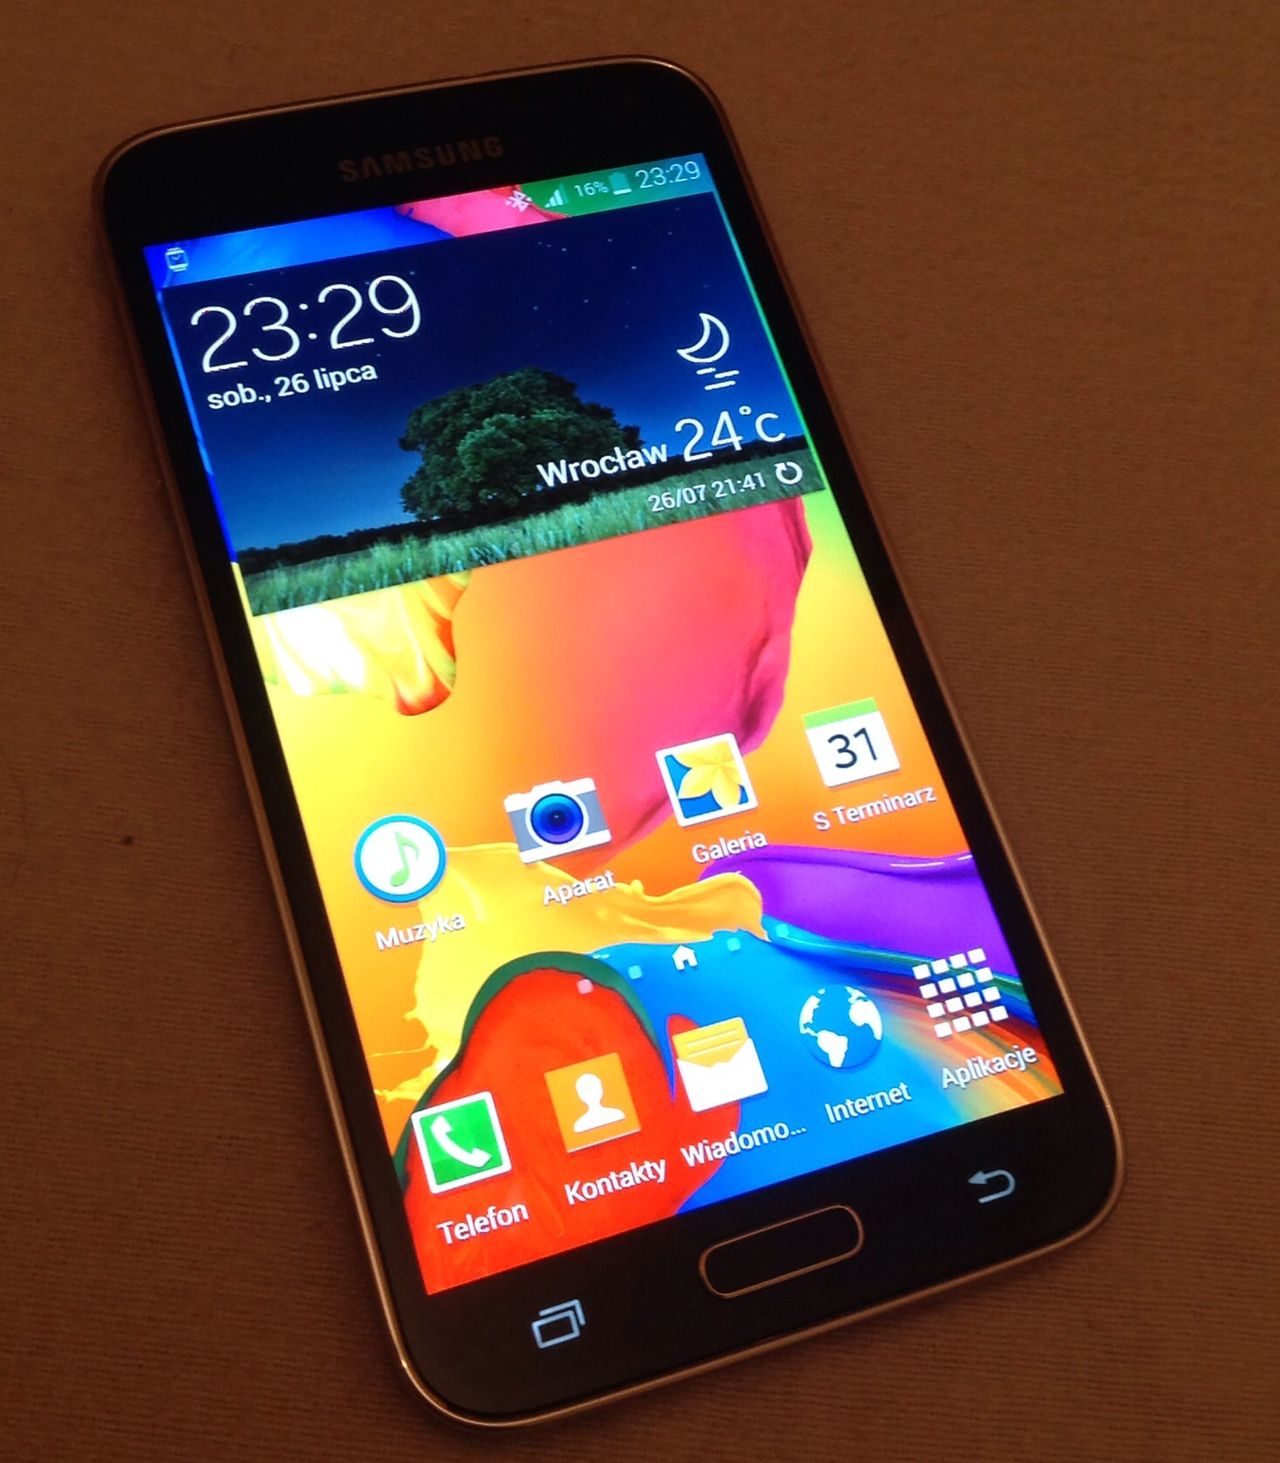 Samsung Galaxy S5 - opinia po miesiącu użytkowania